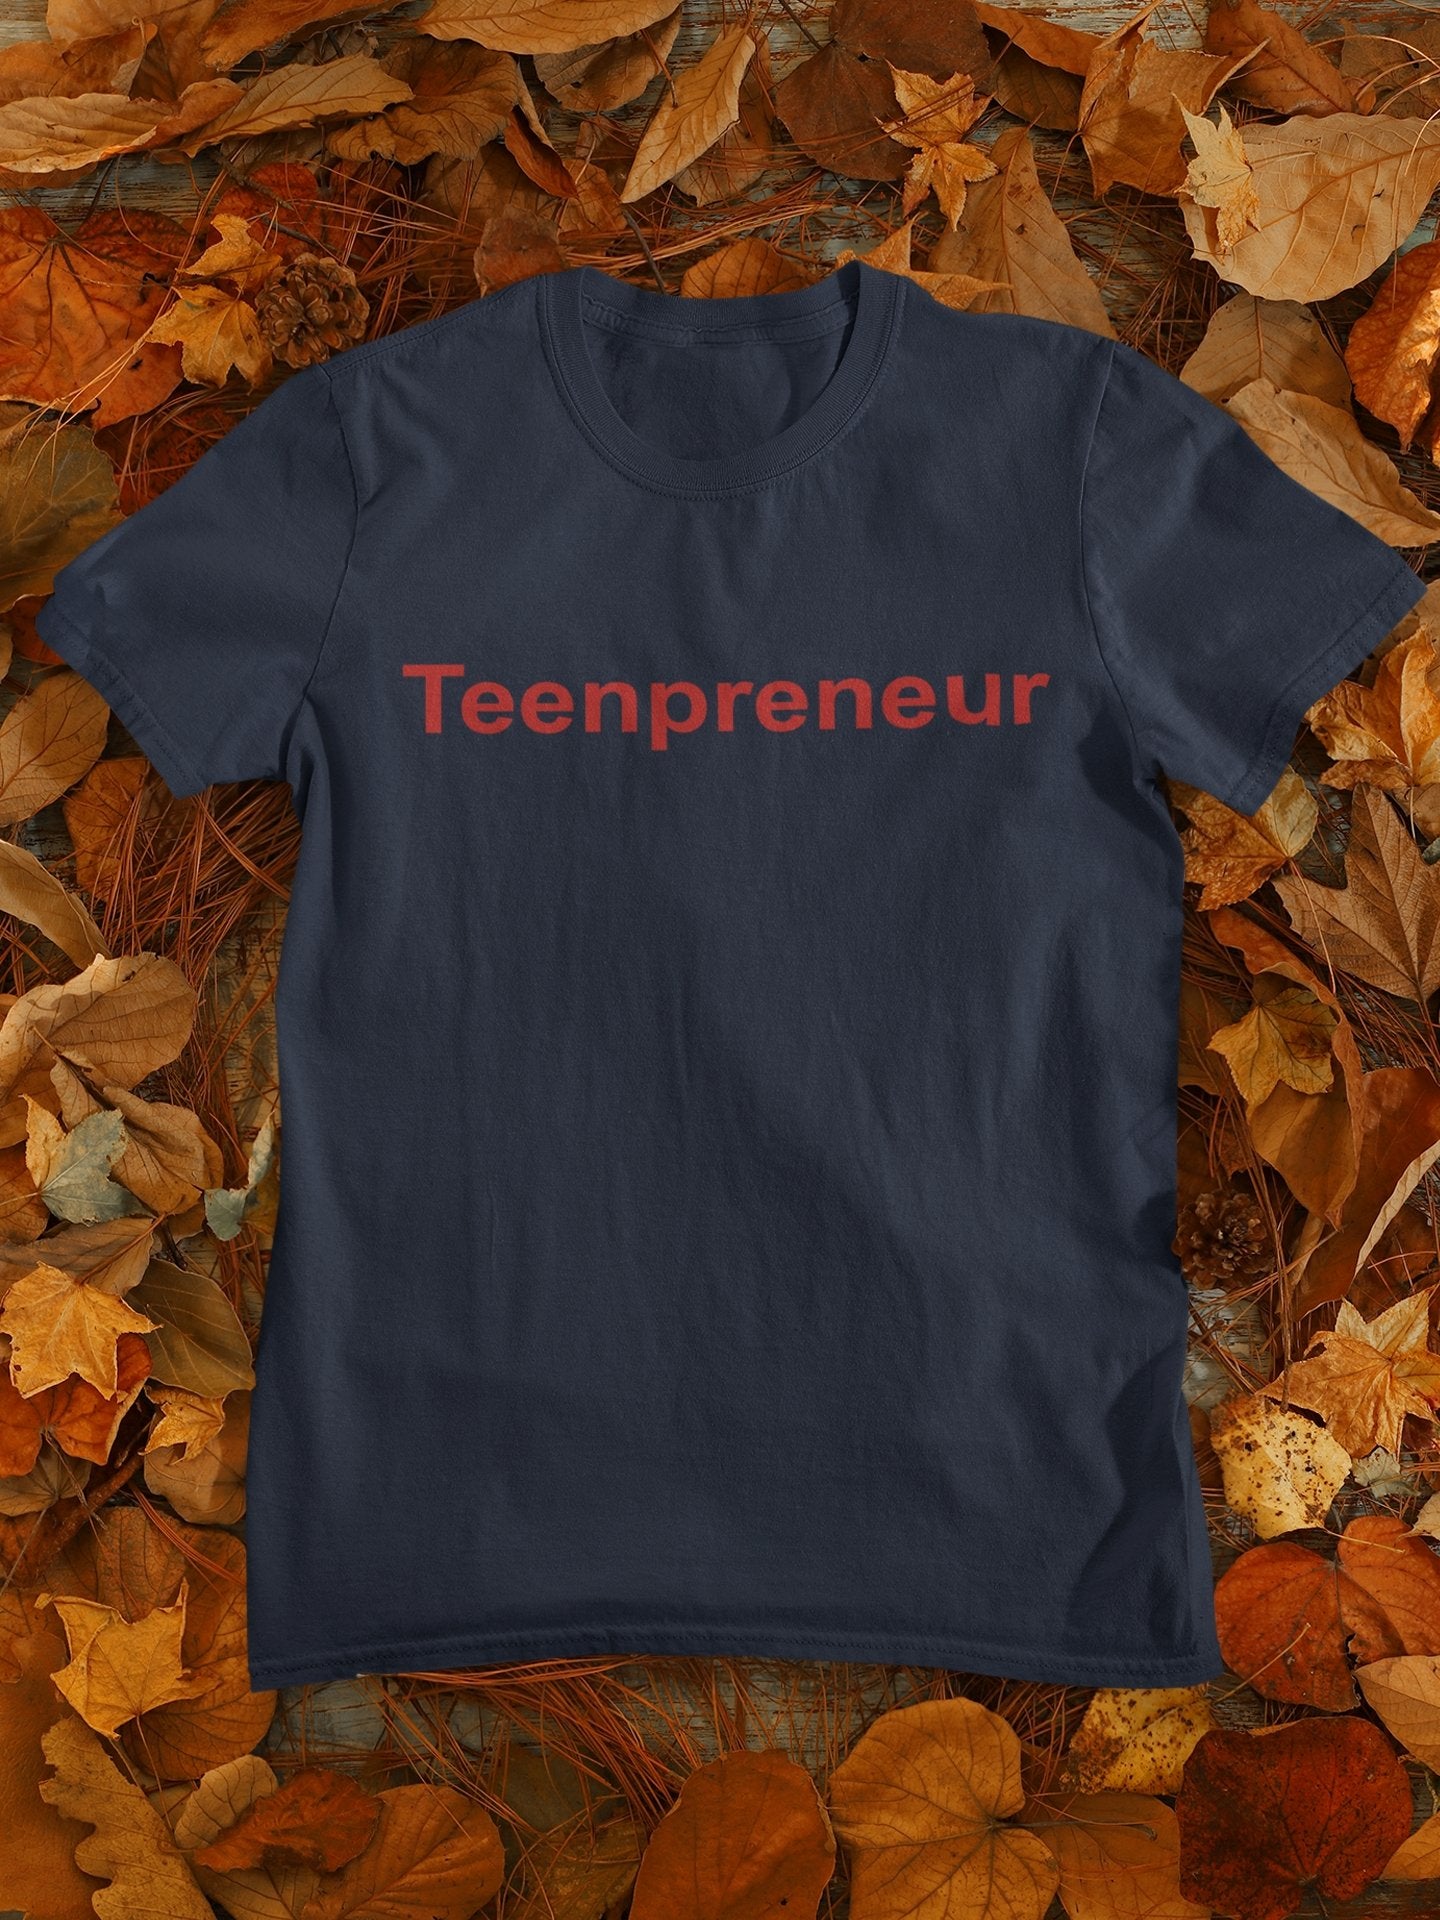 Teenpreneur Mens Half Sleeves T-shirt- FunkyTeesClub - Funky Tees Club